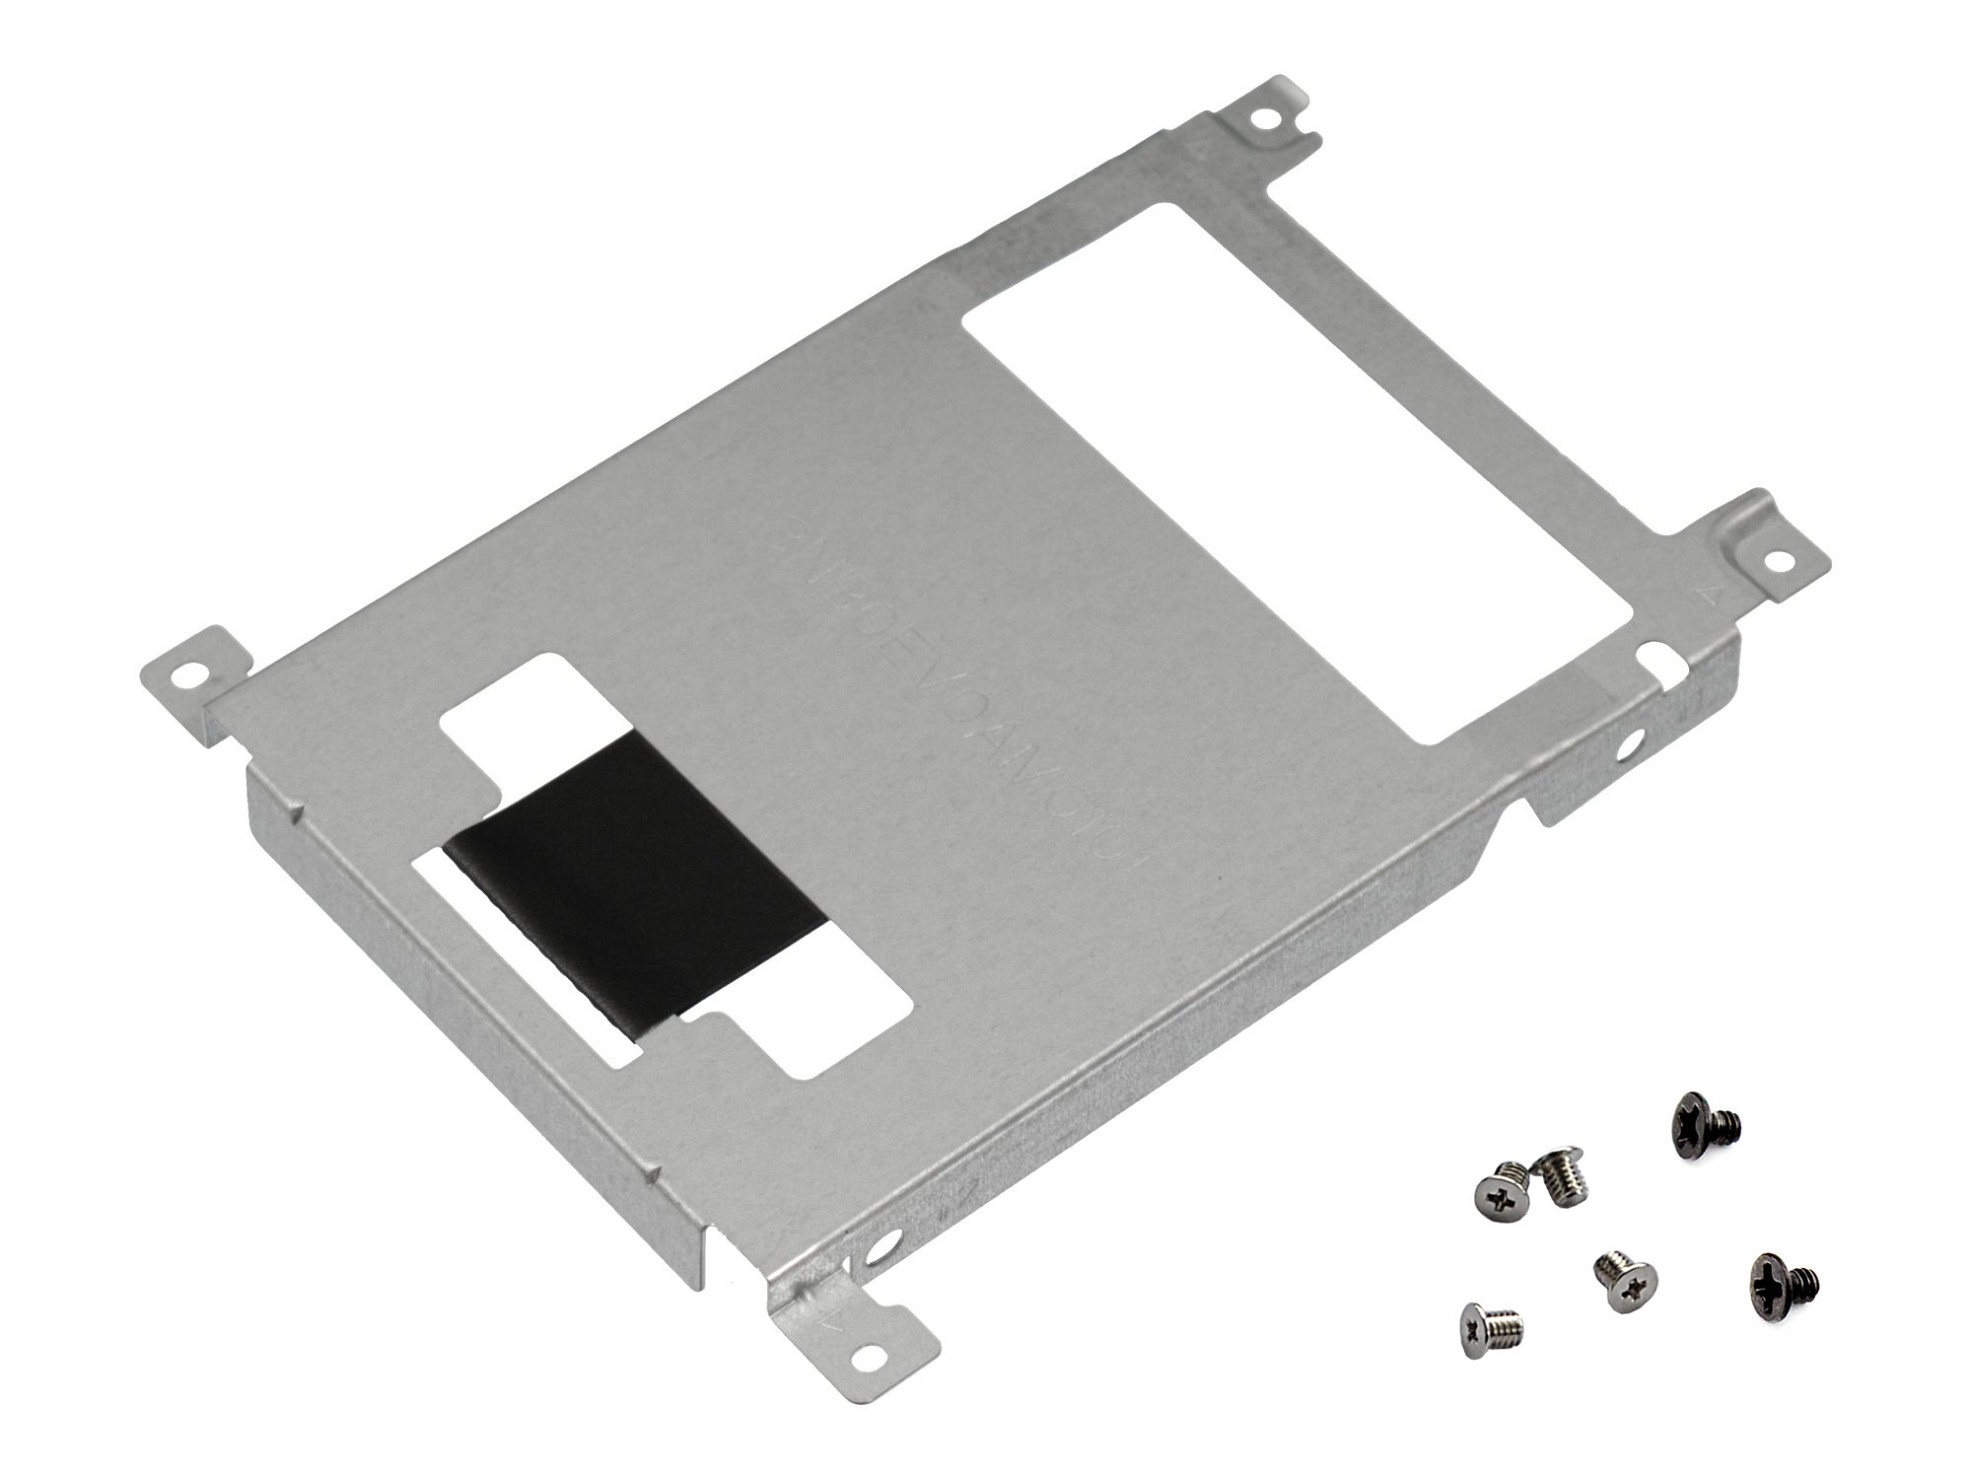 Festplatten-Einbaurahmen für den 1. Festplatten Schacht inkl. Schrauben Original für Asus VivoBook F705UA